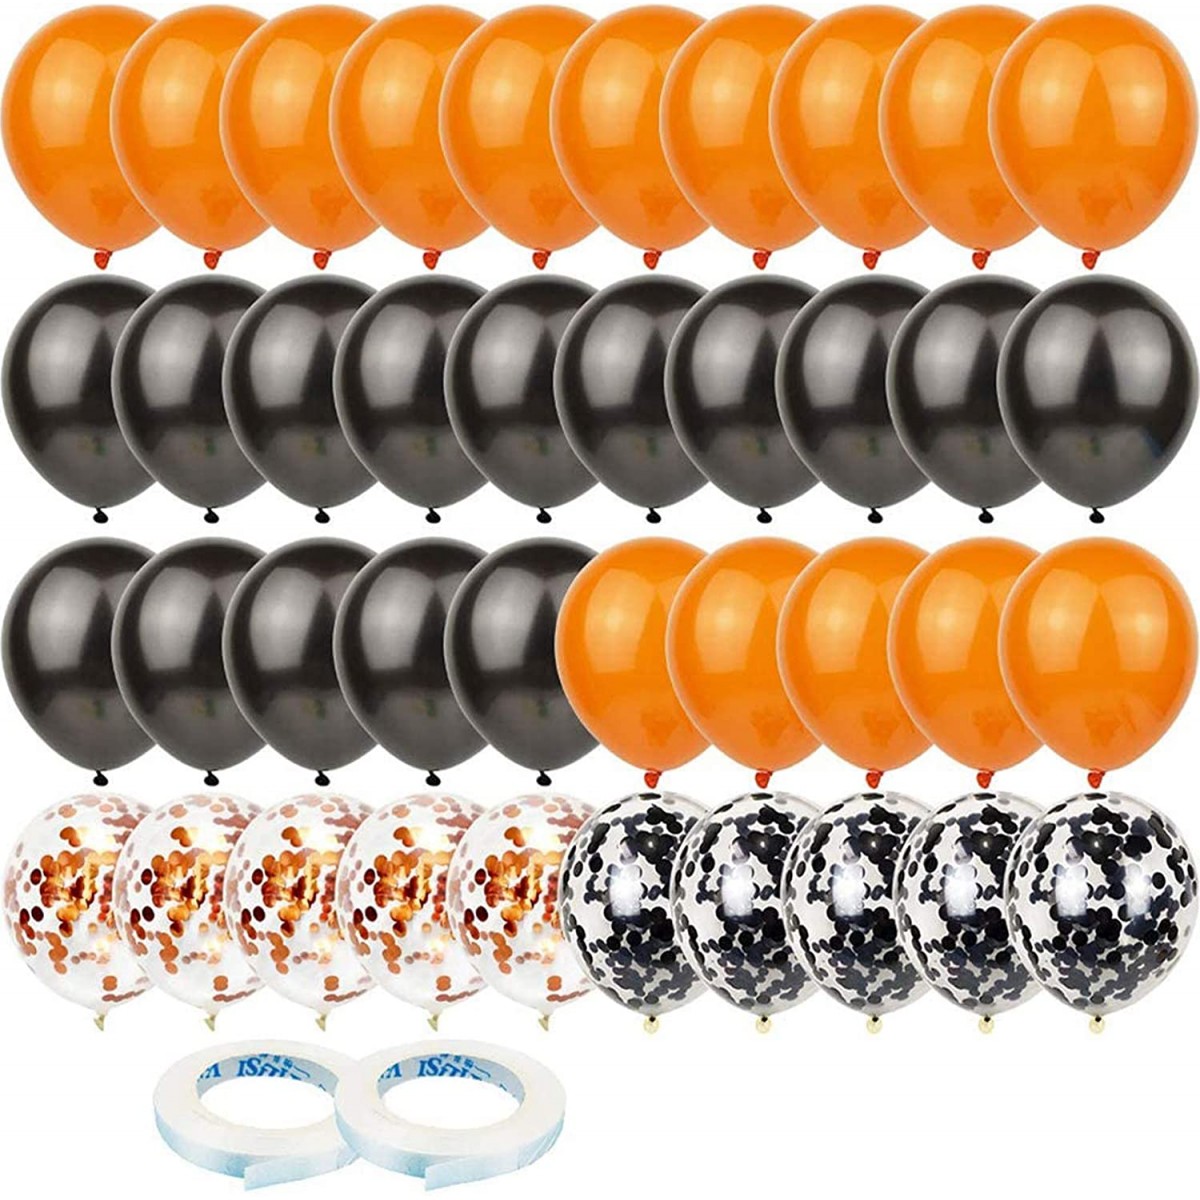 Set da 60 Palloncini in lattice neri e arancioni, per party